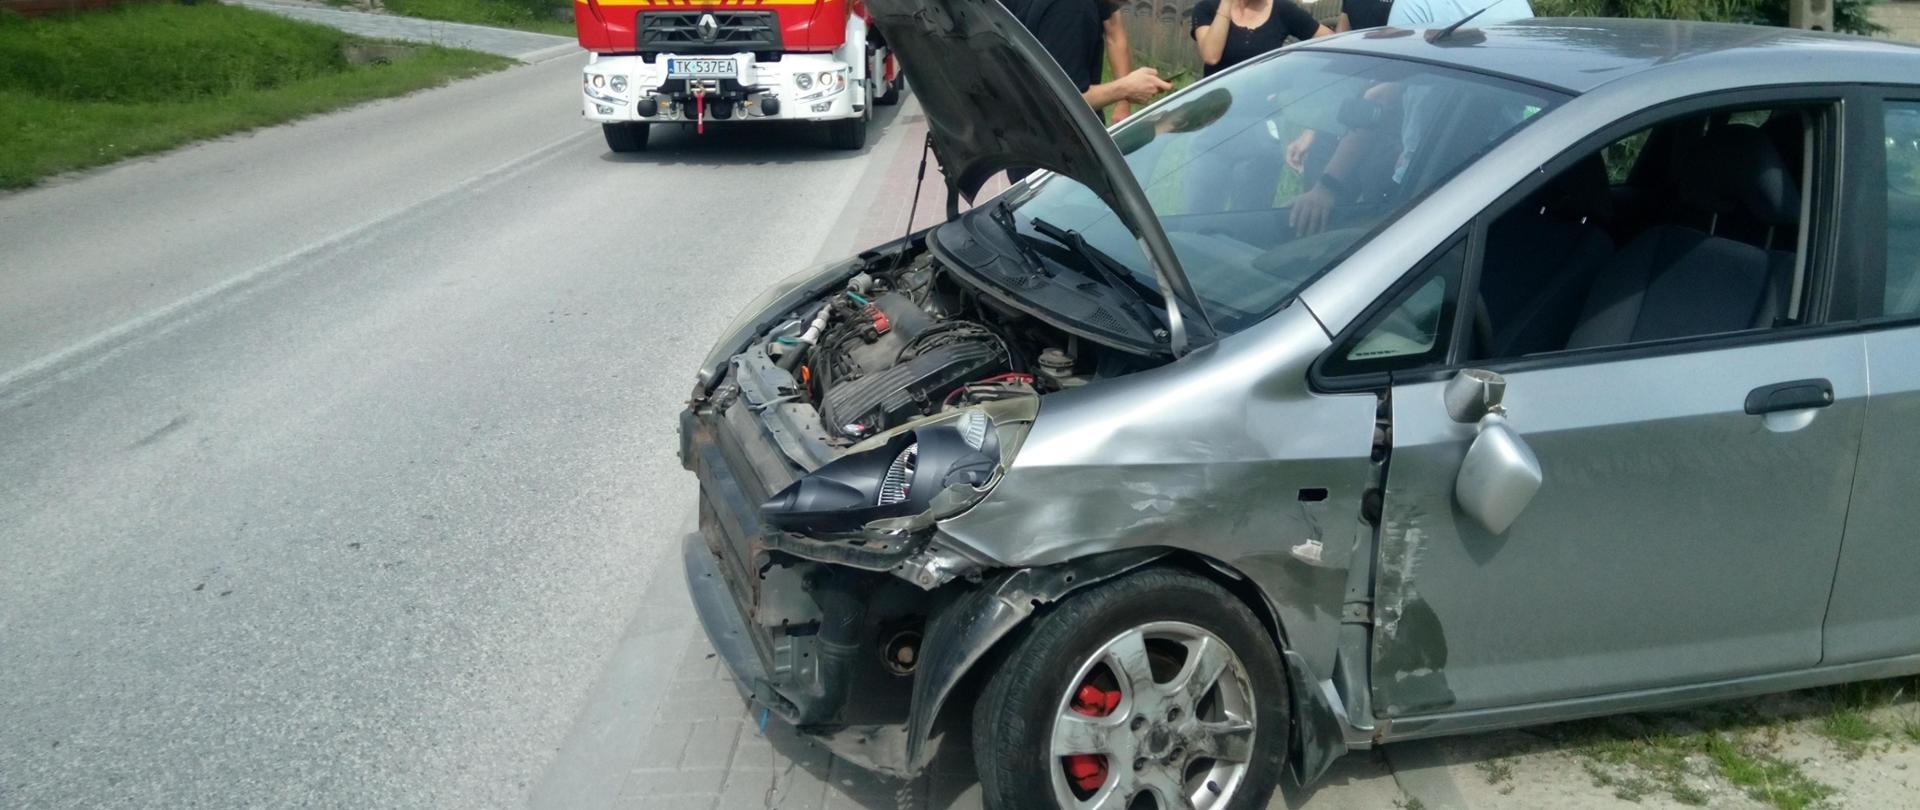 Zdjęcie przedstawia uszkodzony samochód po wypadku stojący na poboczu. Za nim po lewej stronie widać stojący samochód pożarniczy.